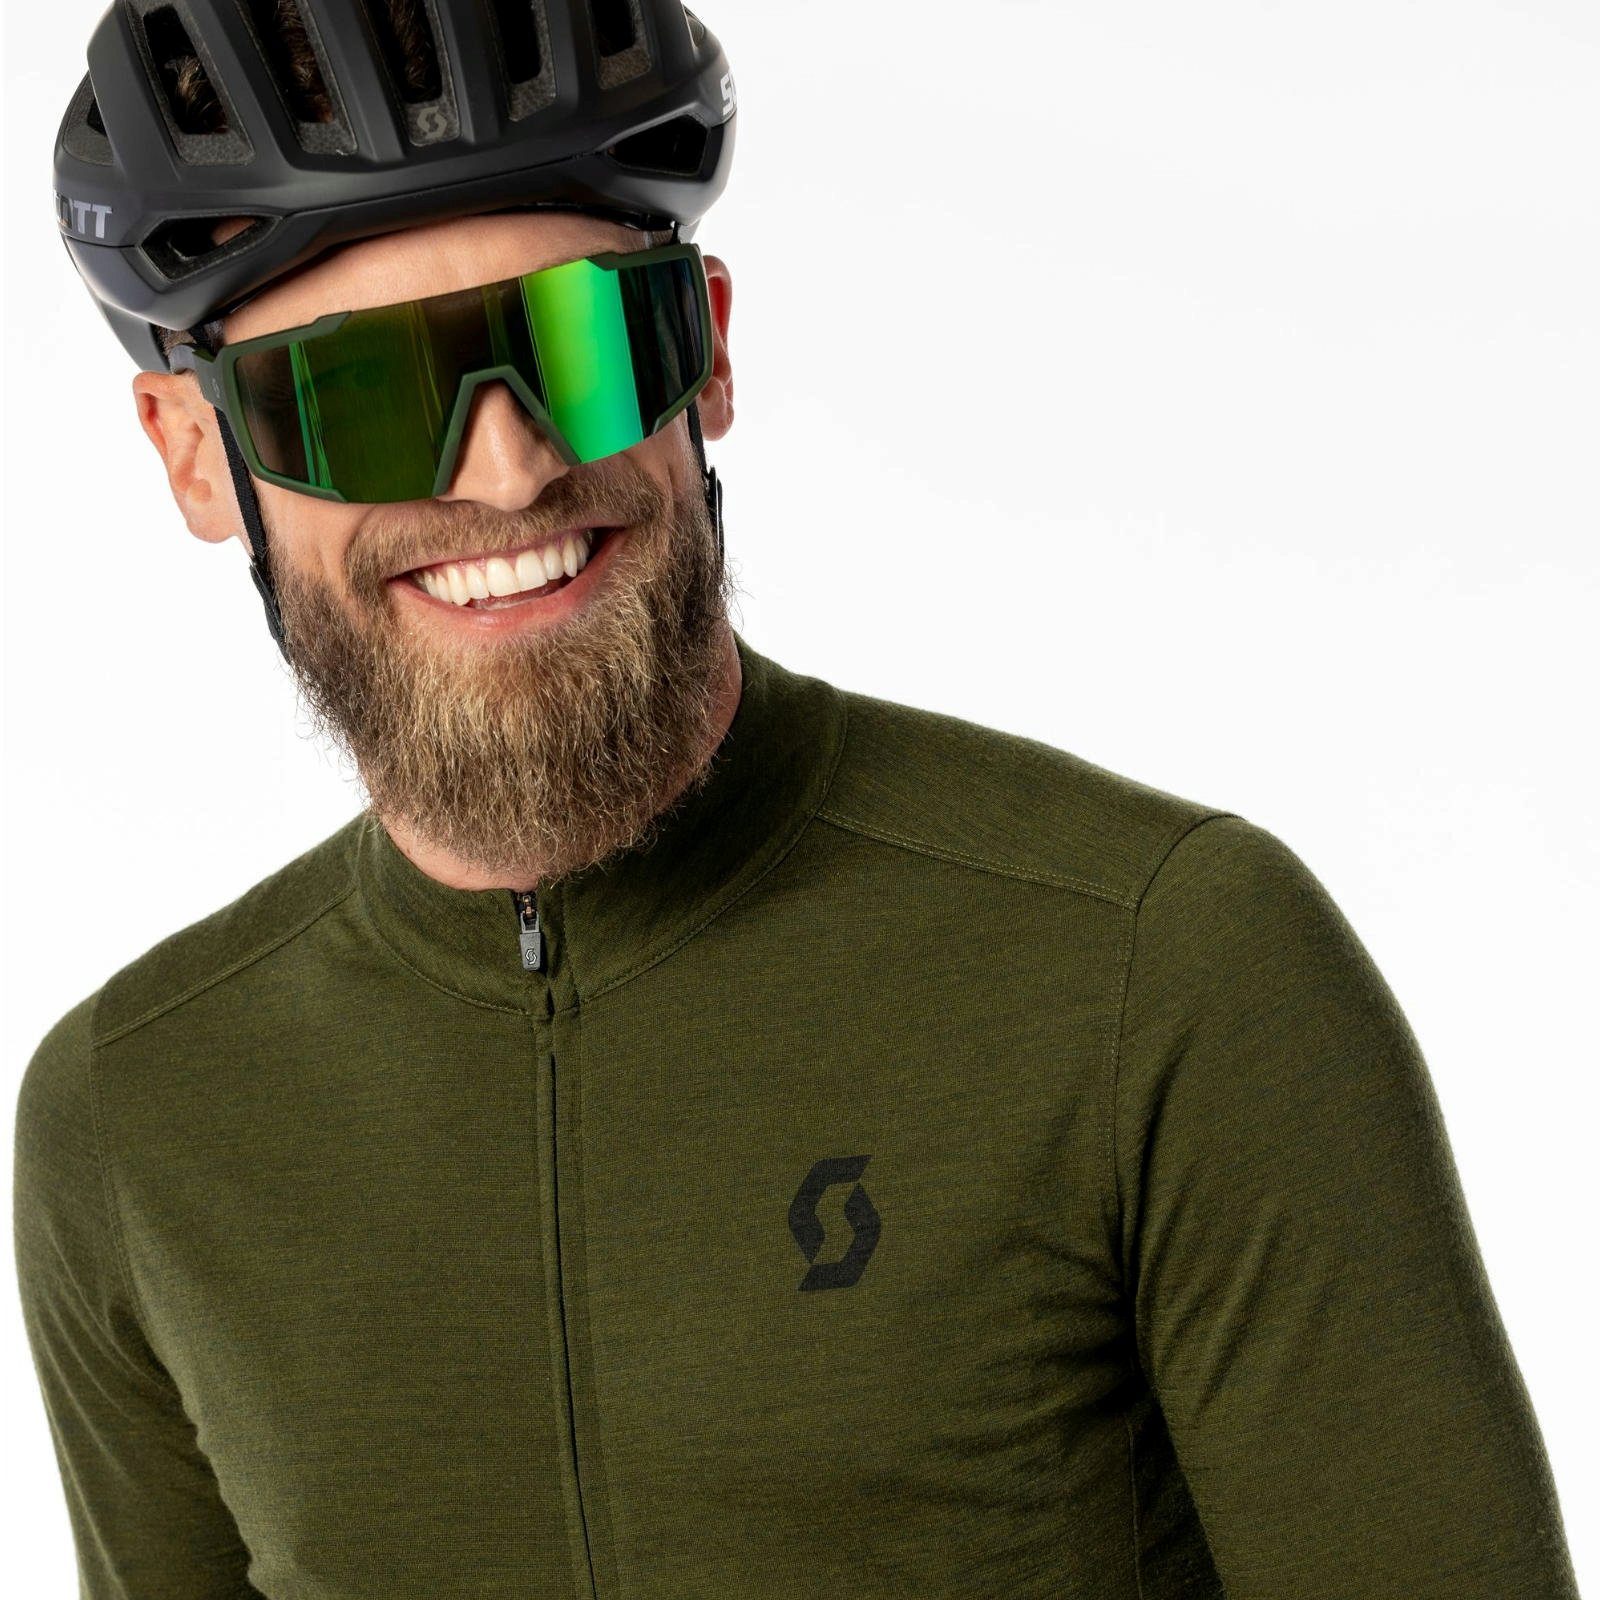 Scott Fahrradbrille Soft Teal Grün Chrom - Grün